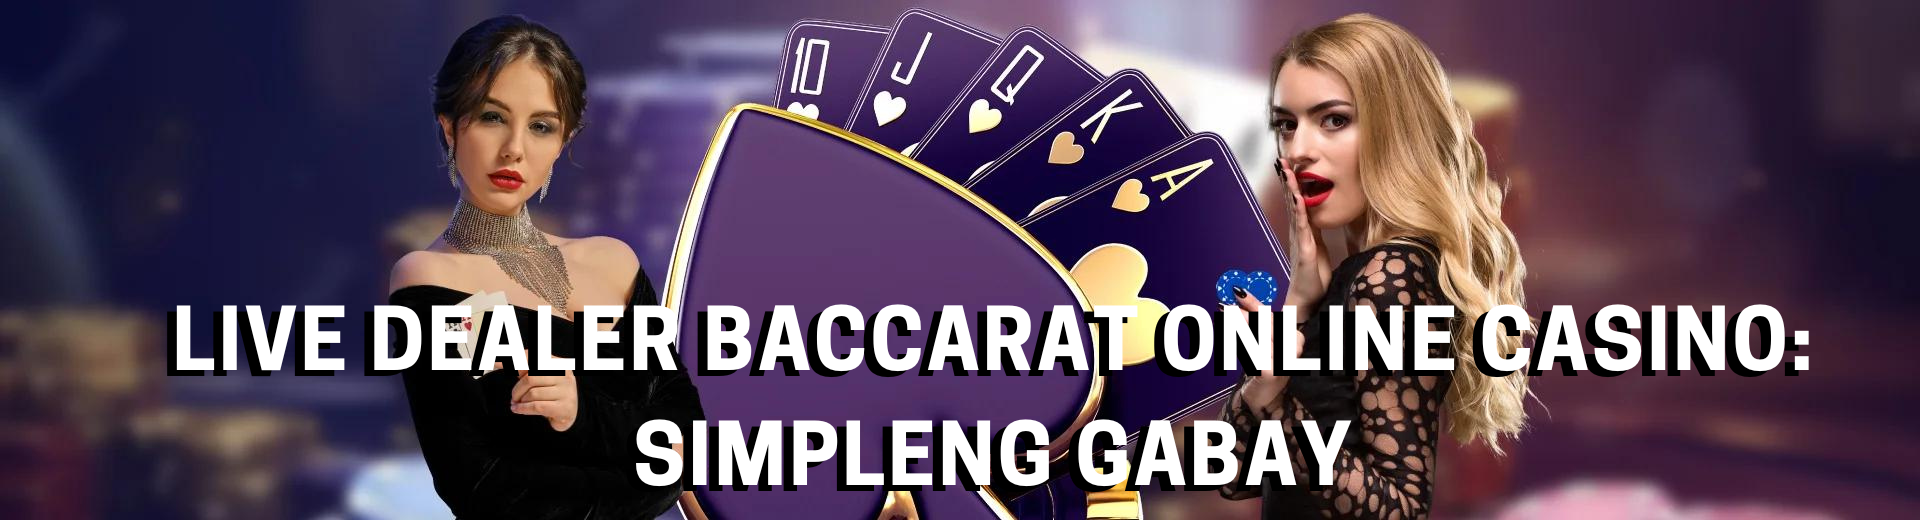 Live Dealer Baccarat Online Casino Simpleng Gabay | OKBet